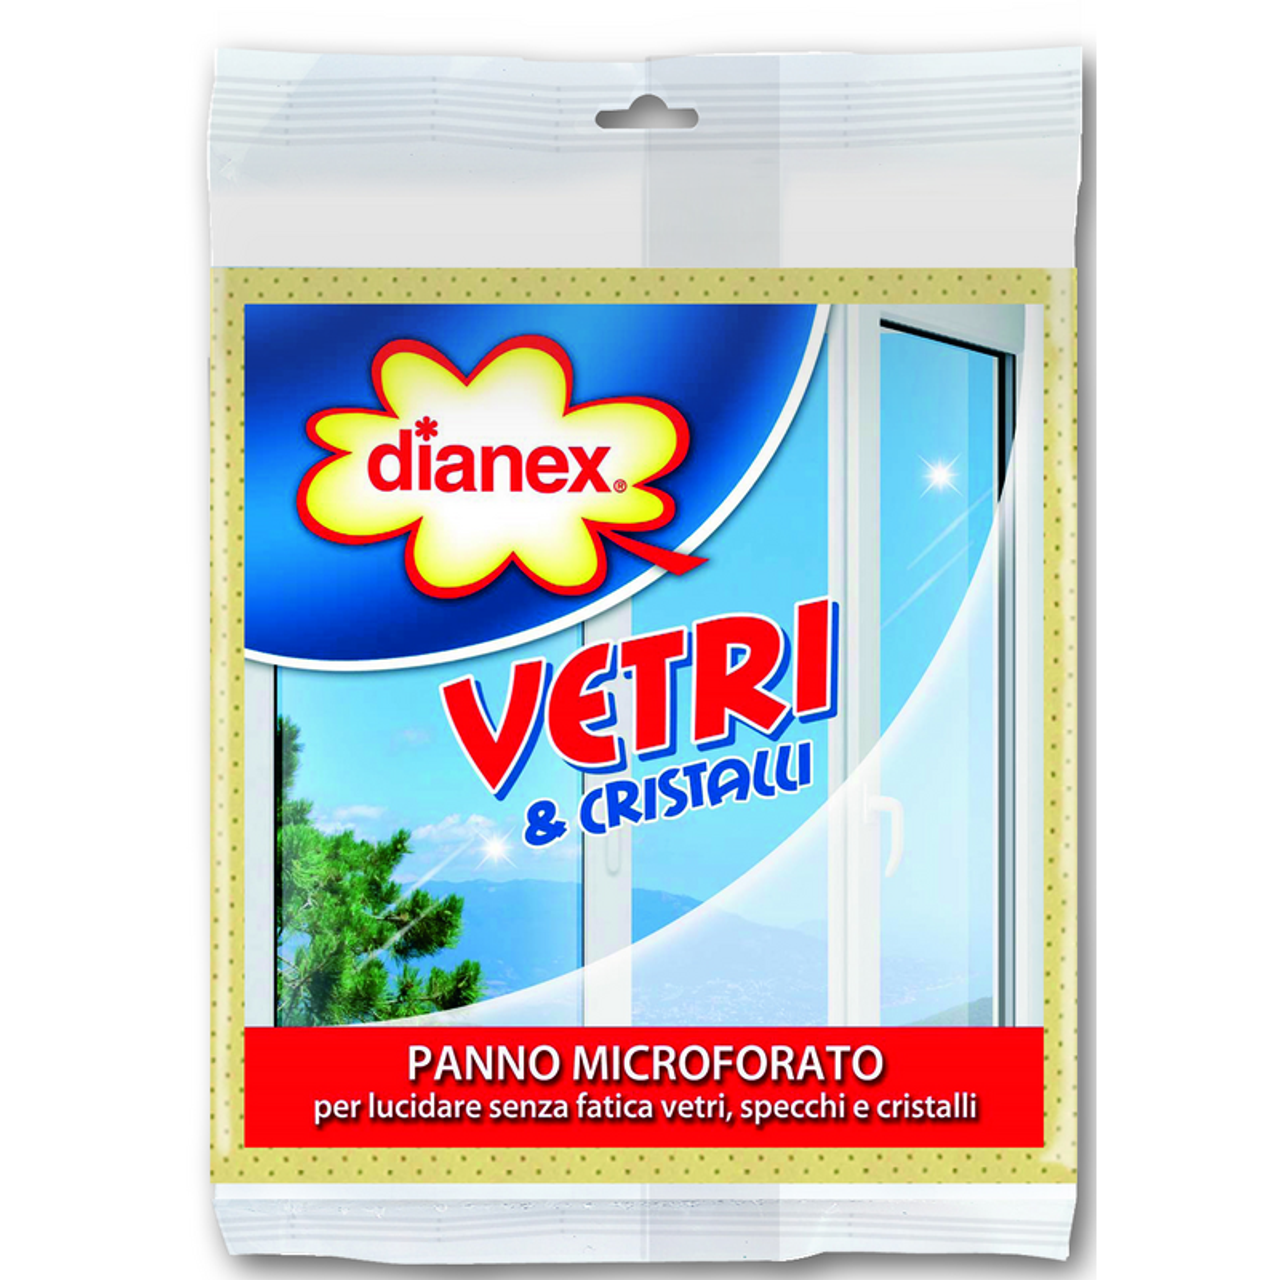 DIANEX VETRI & CRISTALLI PANNO MICROFORATO - PiùMe